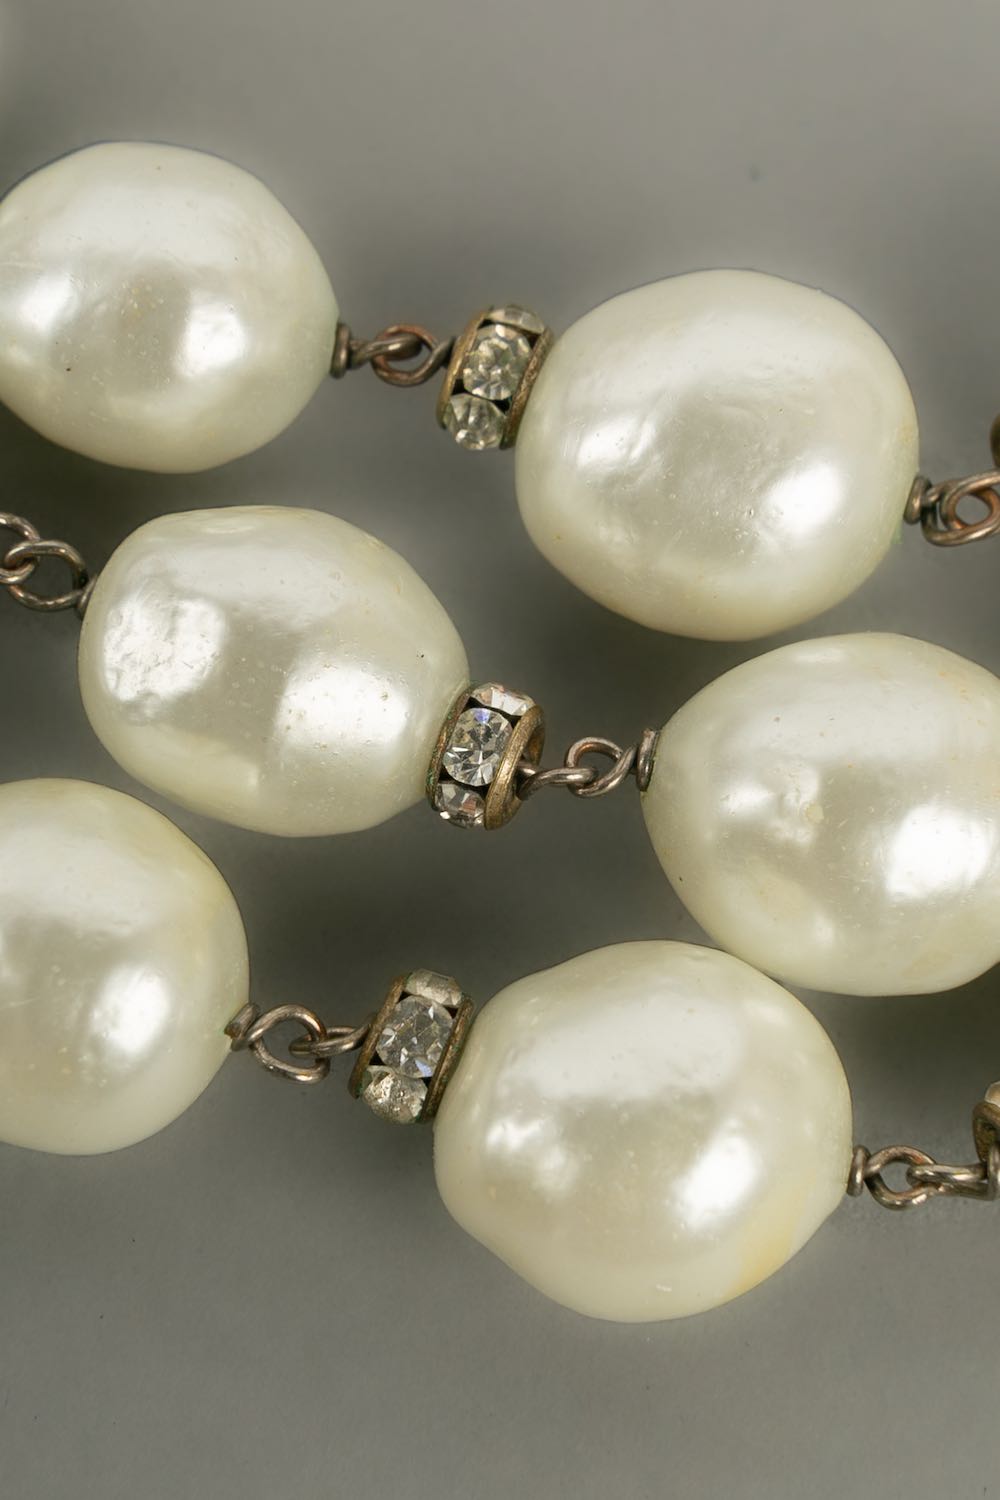 Collier de perles nacrées